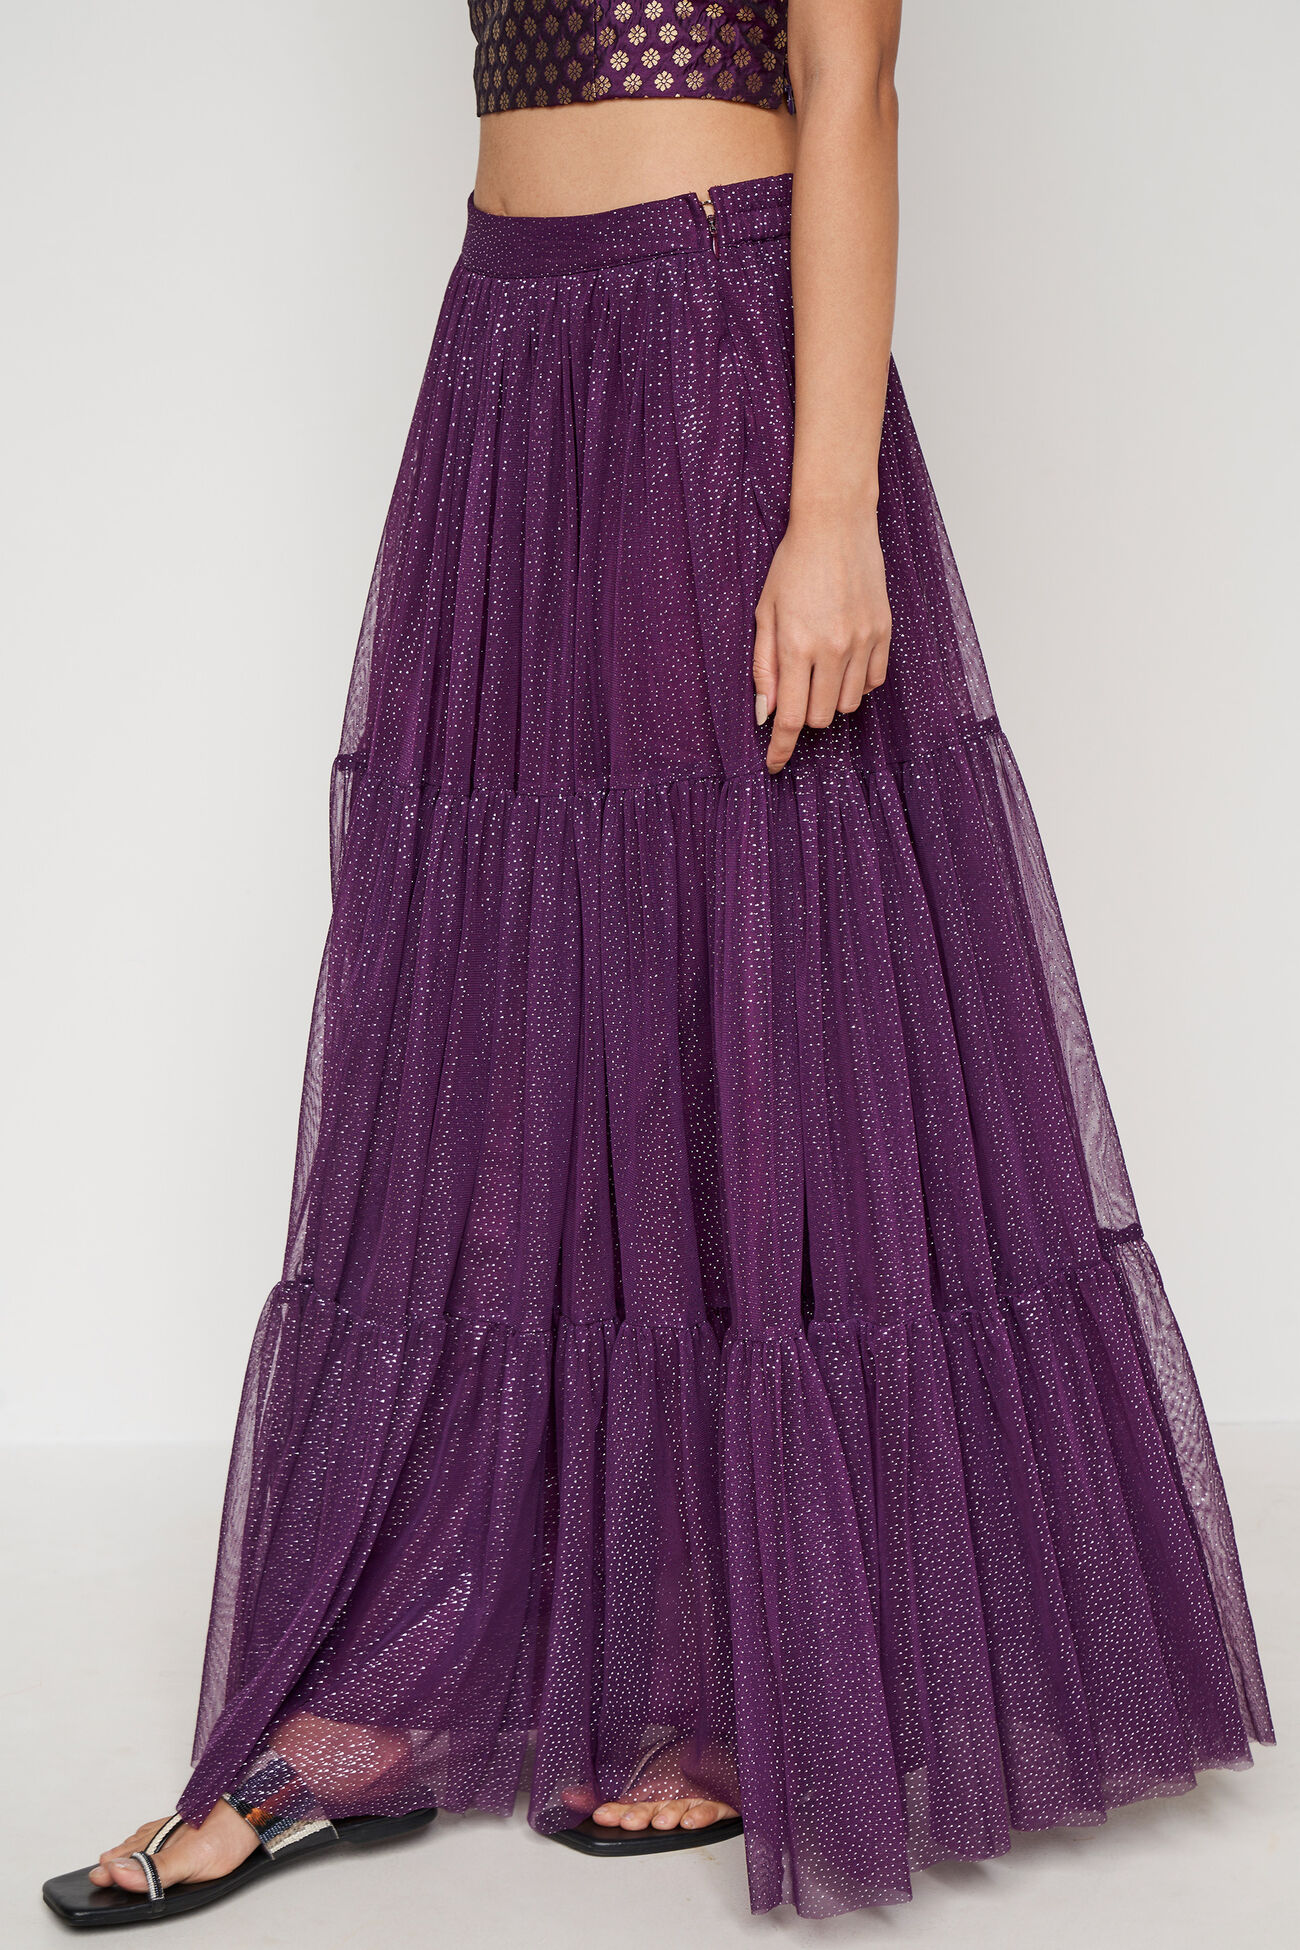 Purple Foil Print Flared Skirt, Purple, image 2